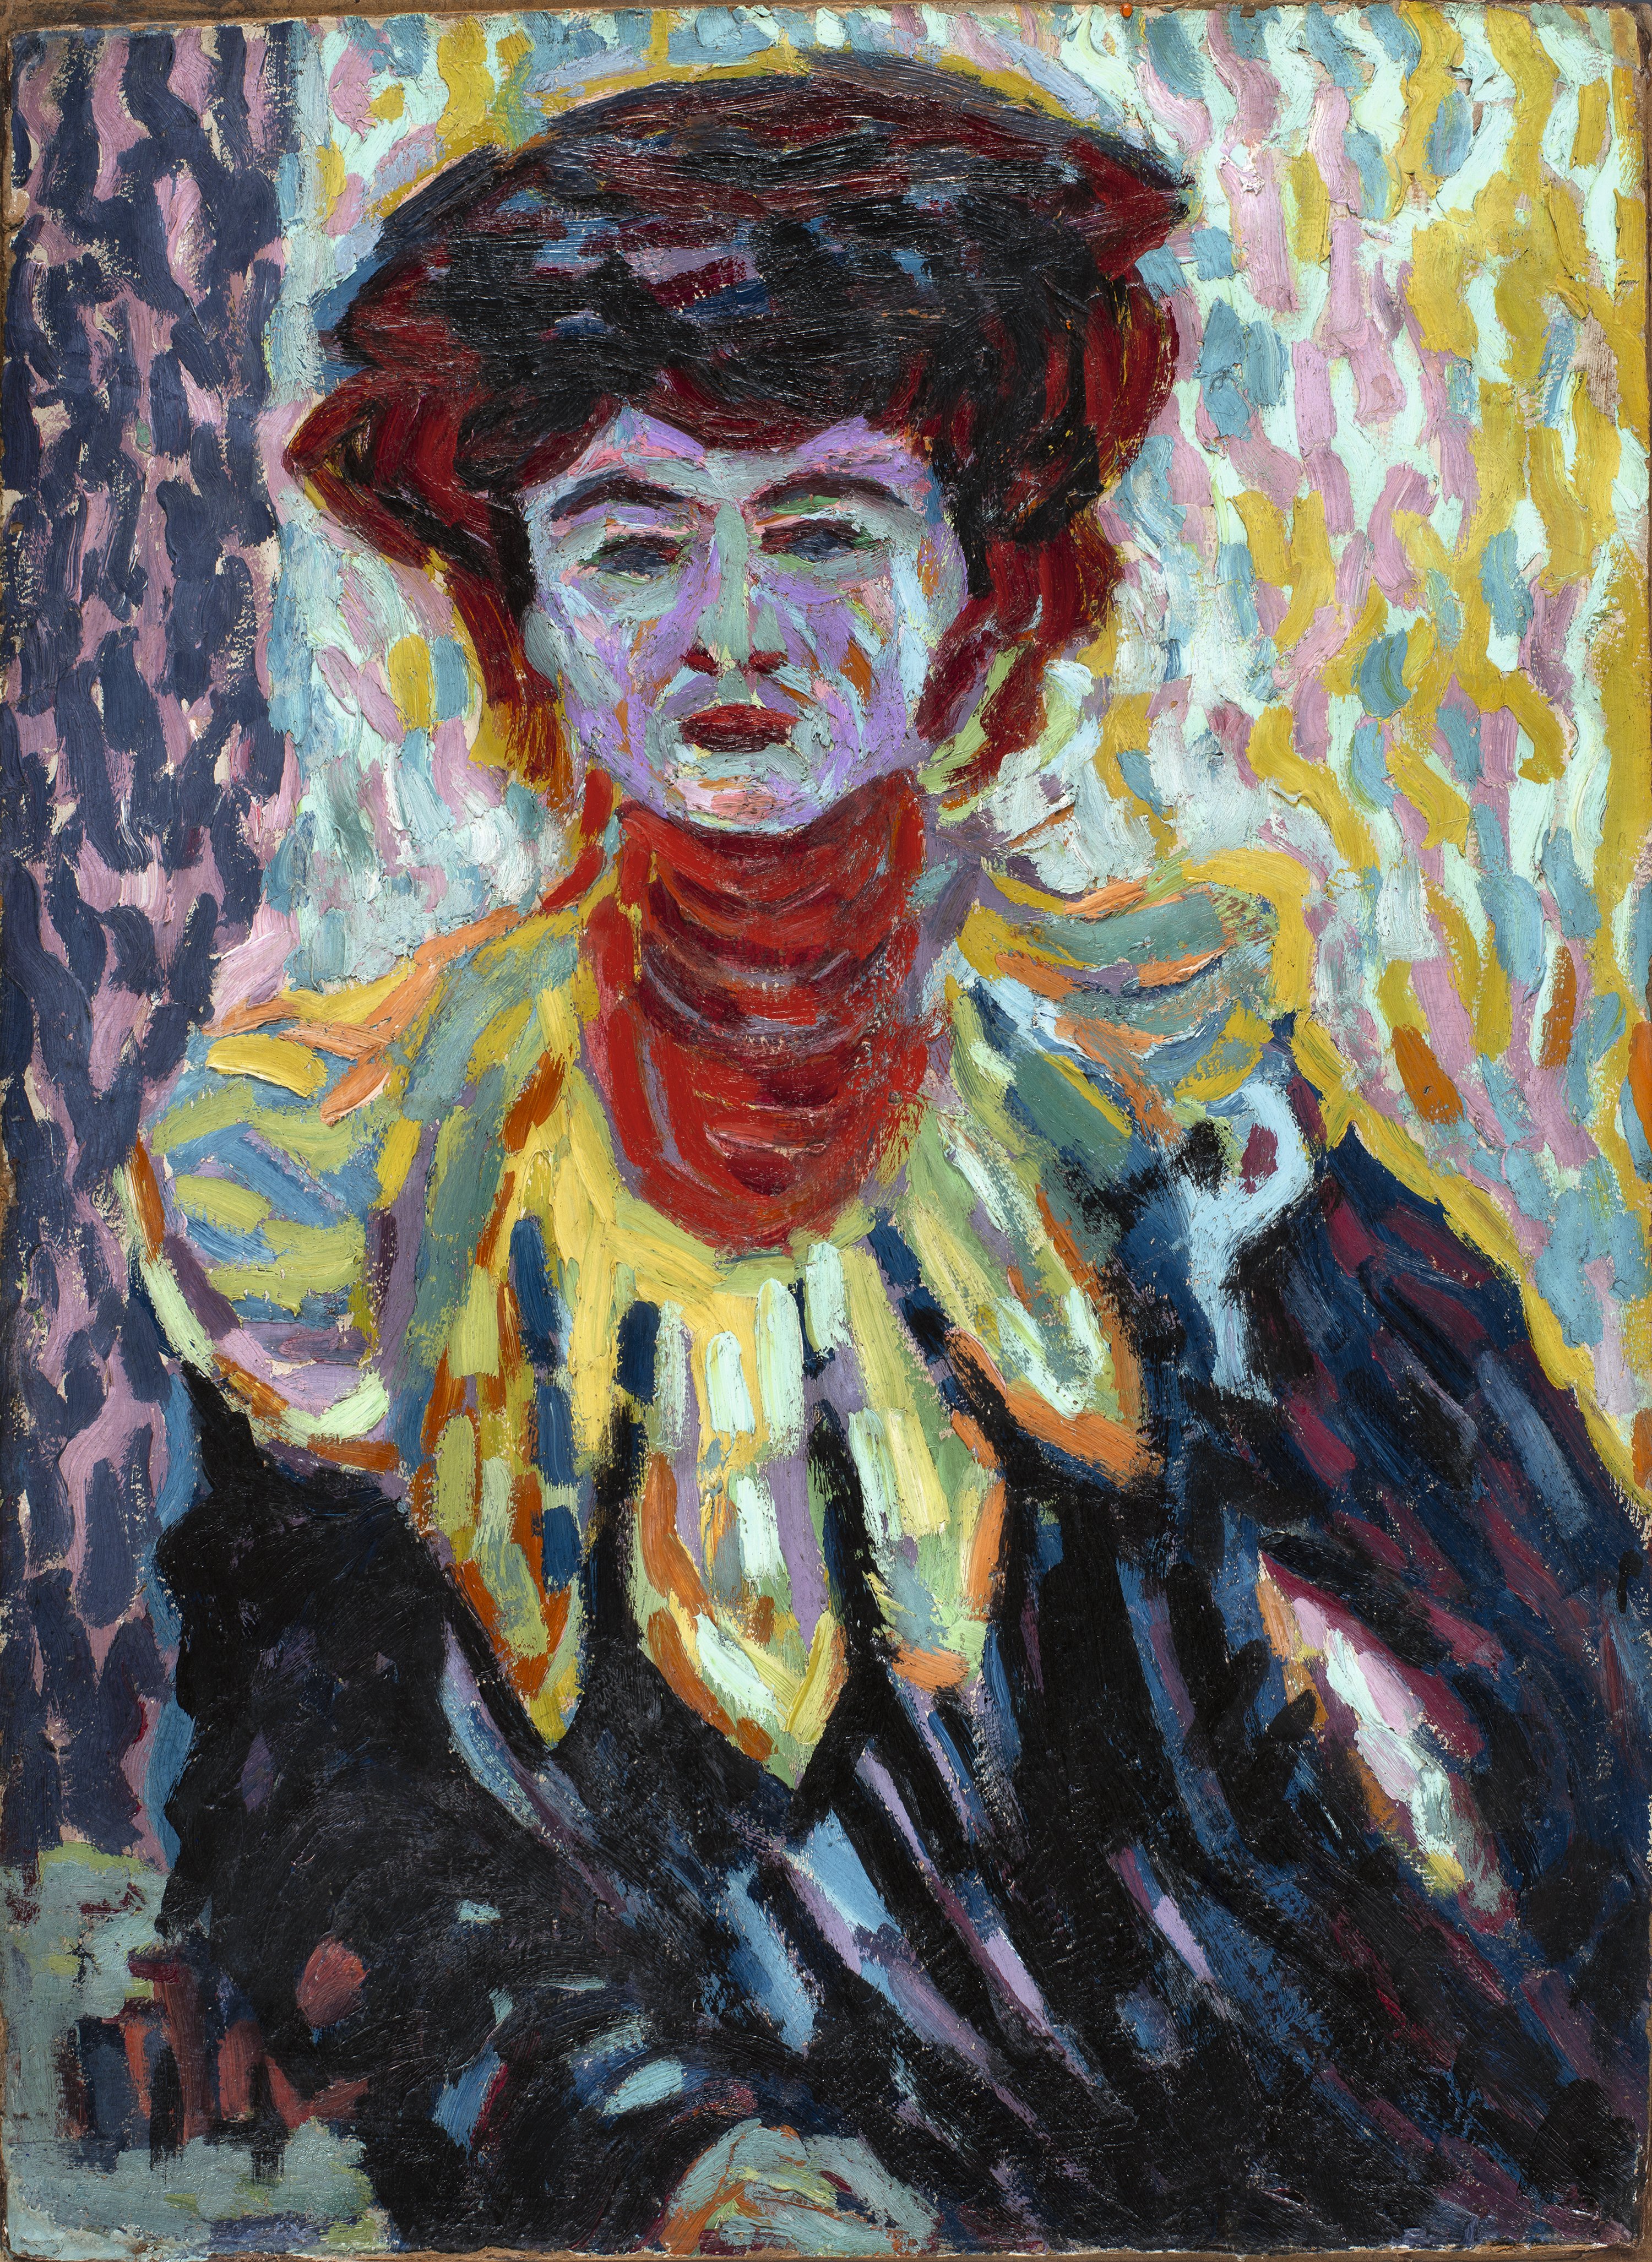 Doris with Ruff Collar. Doris con cuello alto, c. 1906